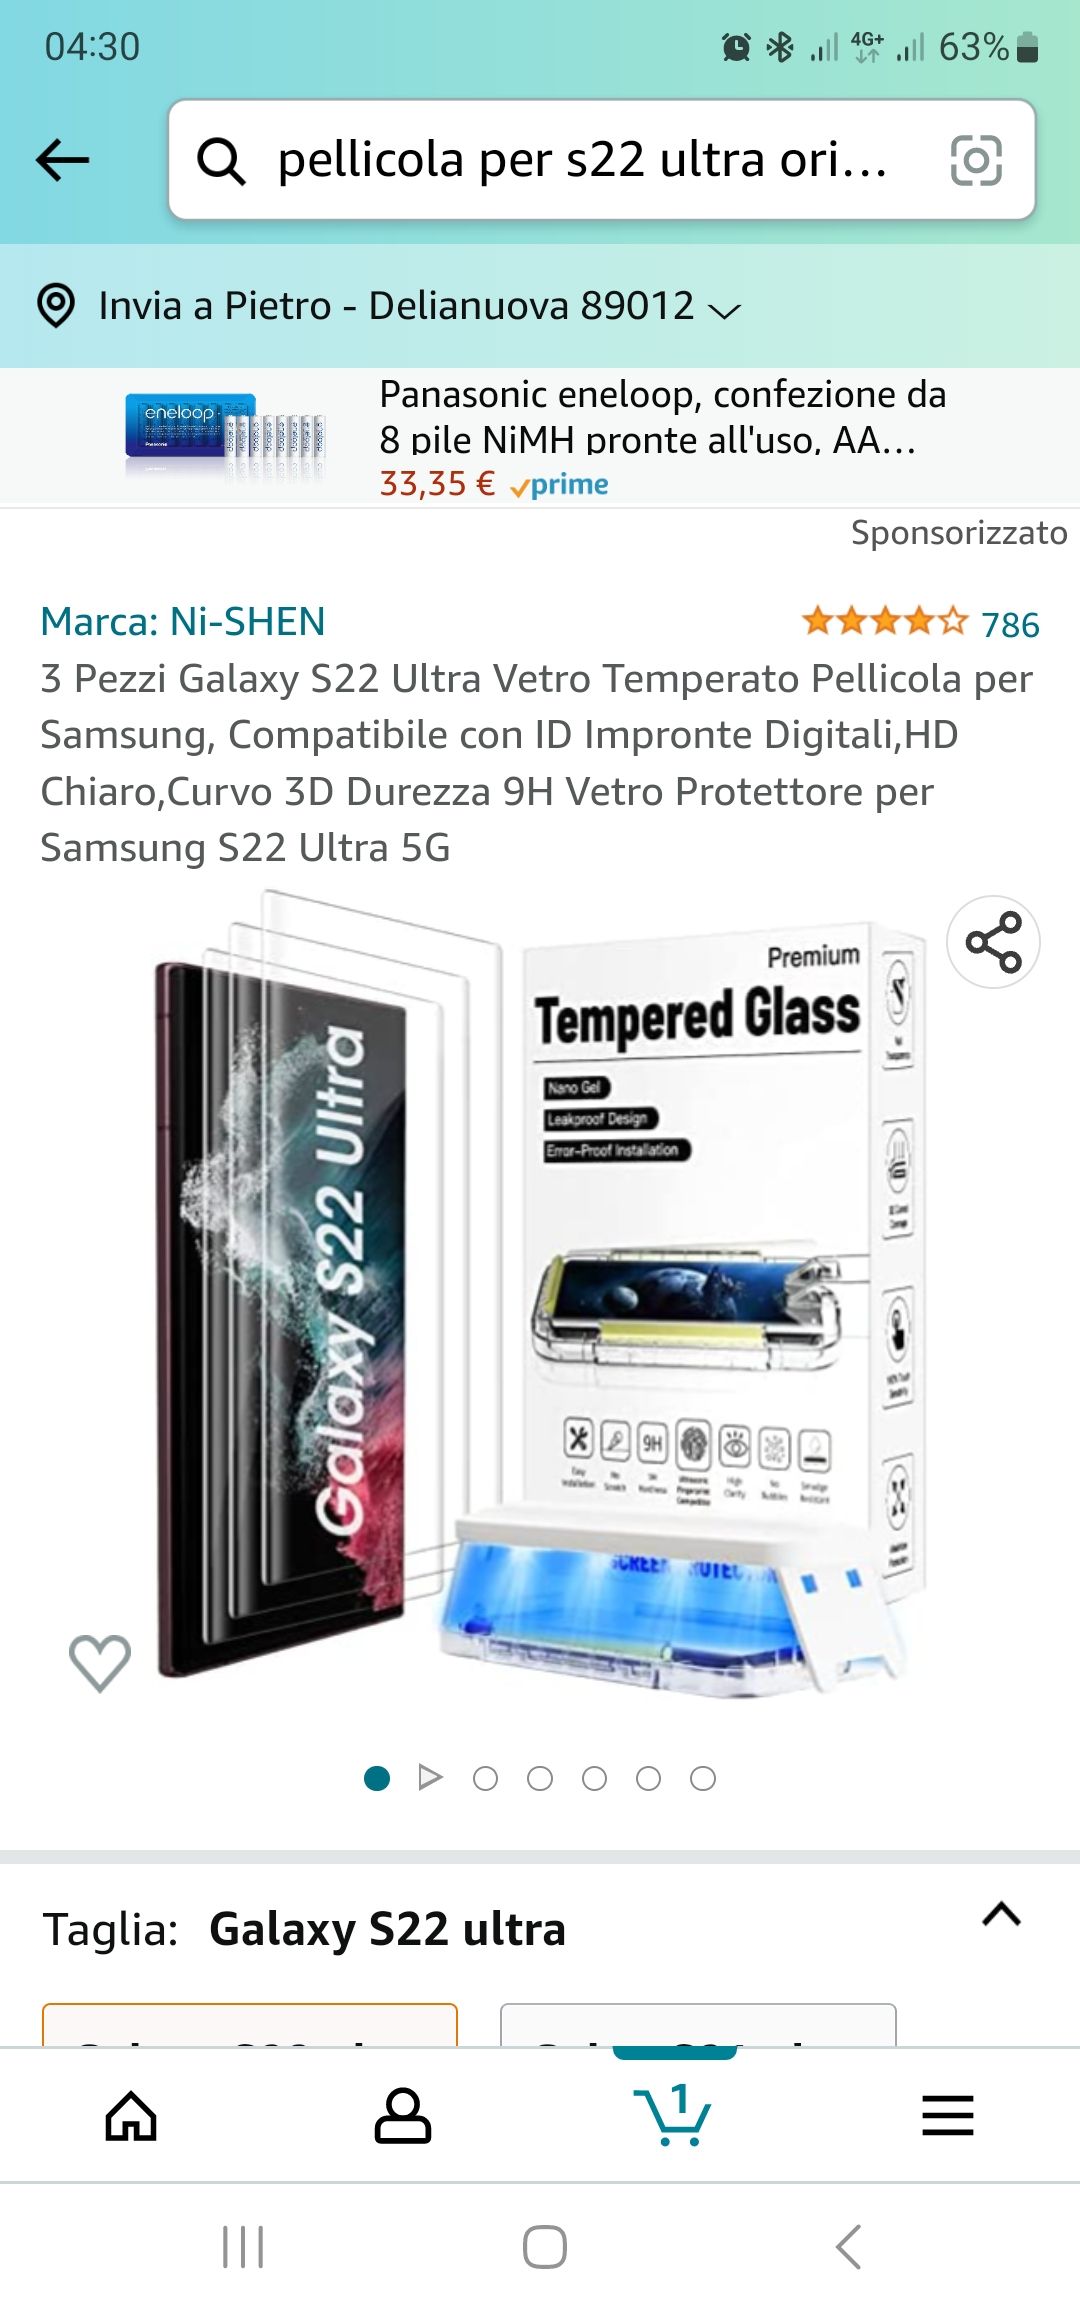 Vetro protezione - Samsung Community